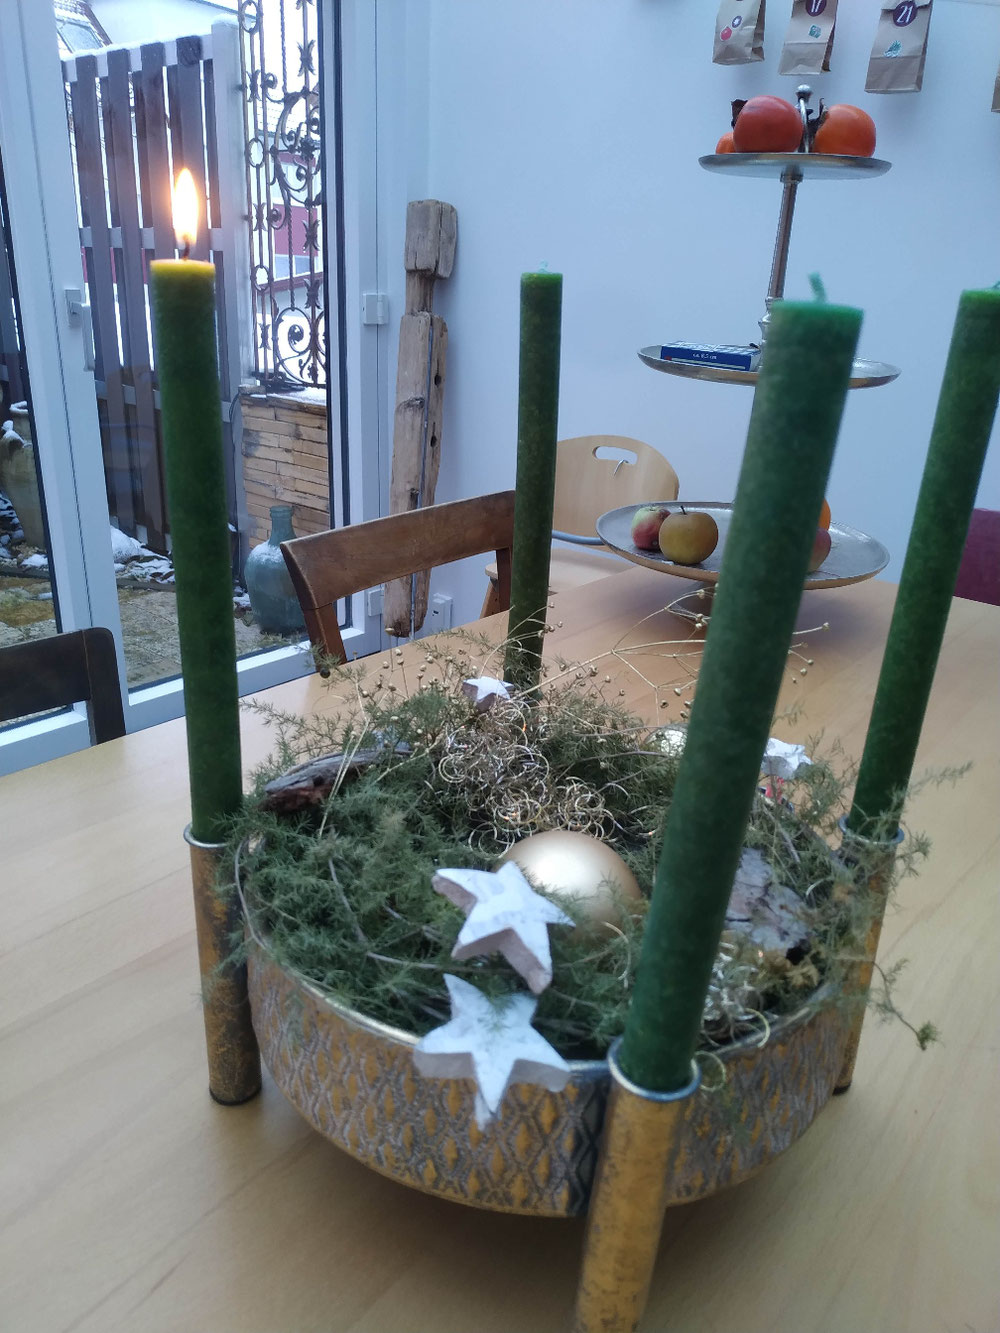 Wir sagen euch an den lieben Advent, sehet die erste Kerze brennt